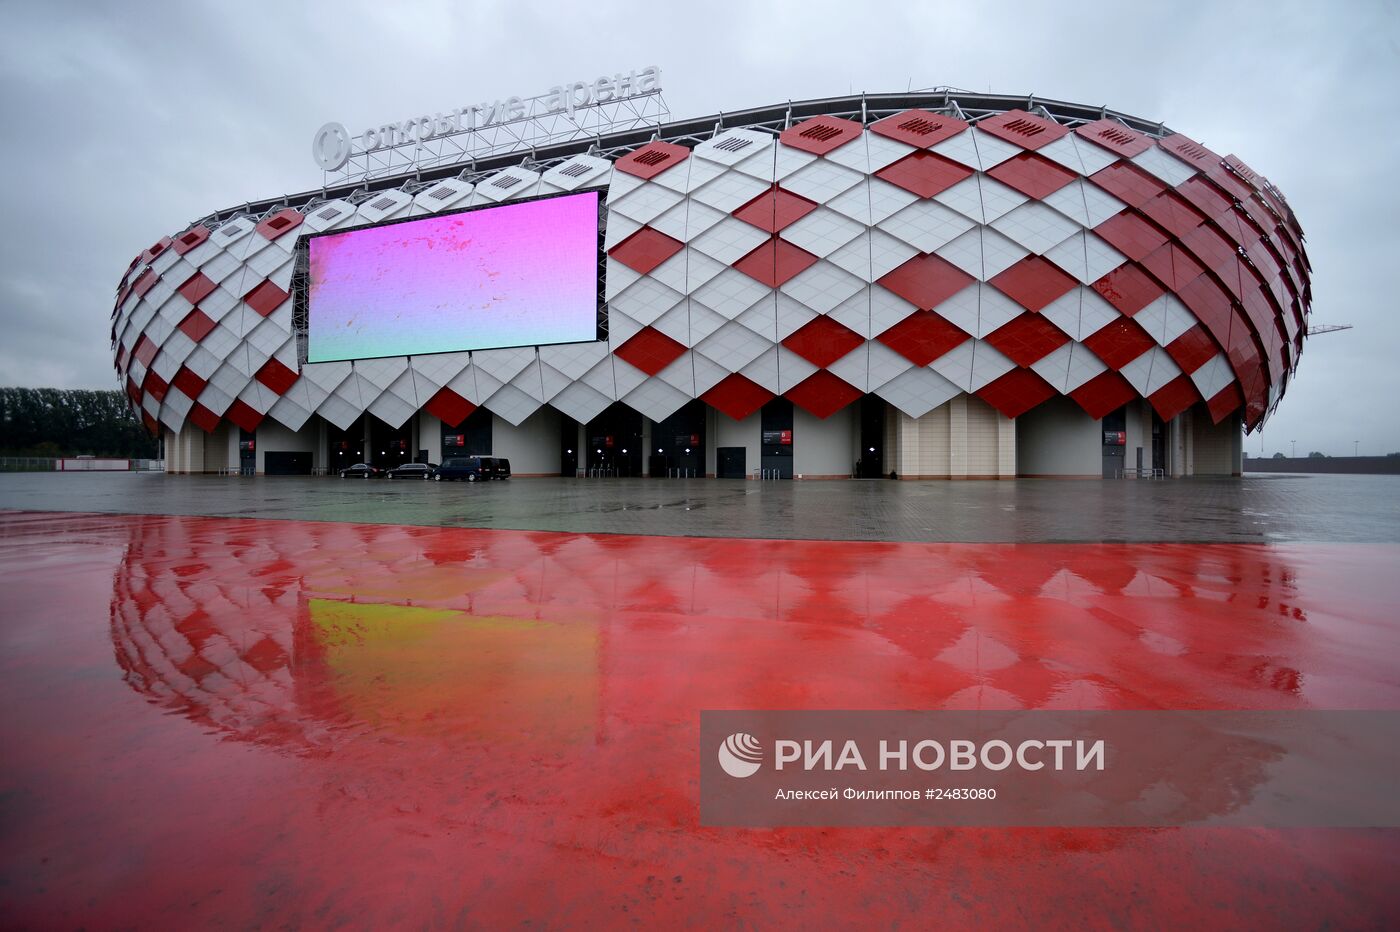 Открытие стадиона футбольного клуба "Спартак" "Открытие Арена"